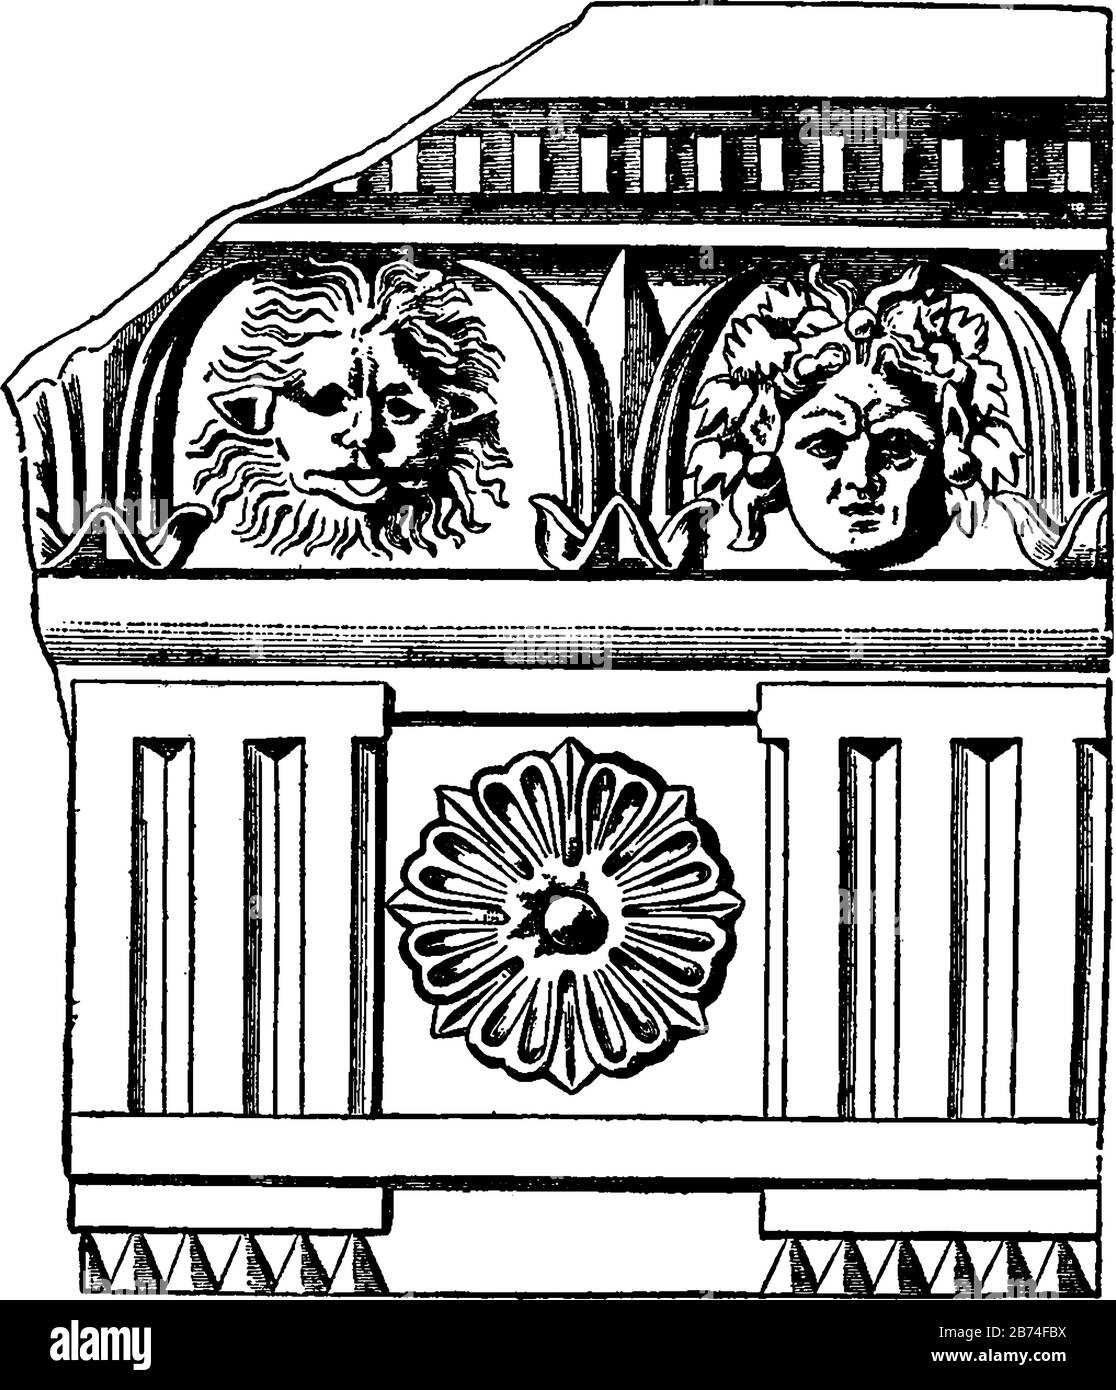 Fregio romano-dorico, triglichi in ordine dorico, la cella di un tempio greco, applicato ad una vasta banda di scultura, disegno a linea d'epoca o incisione Illustrazione Vettoriale